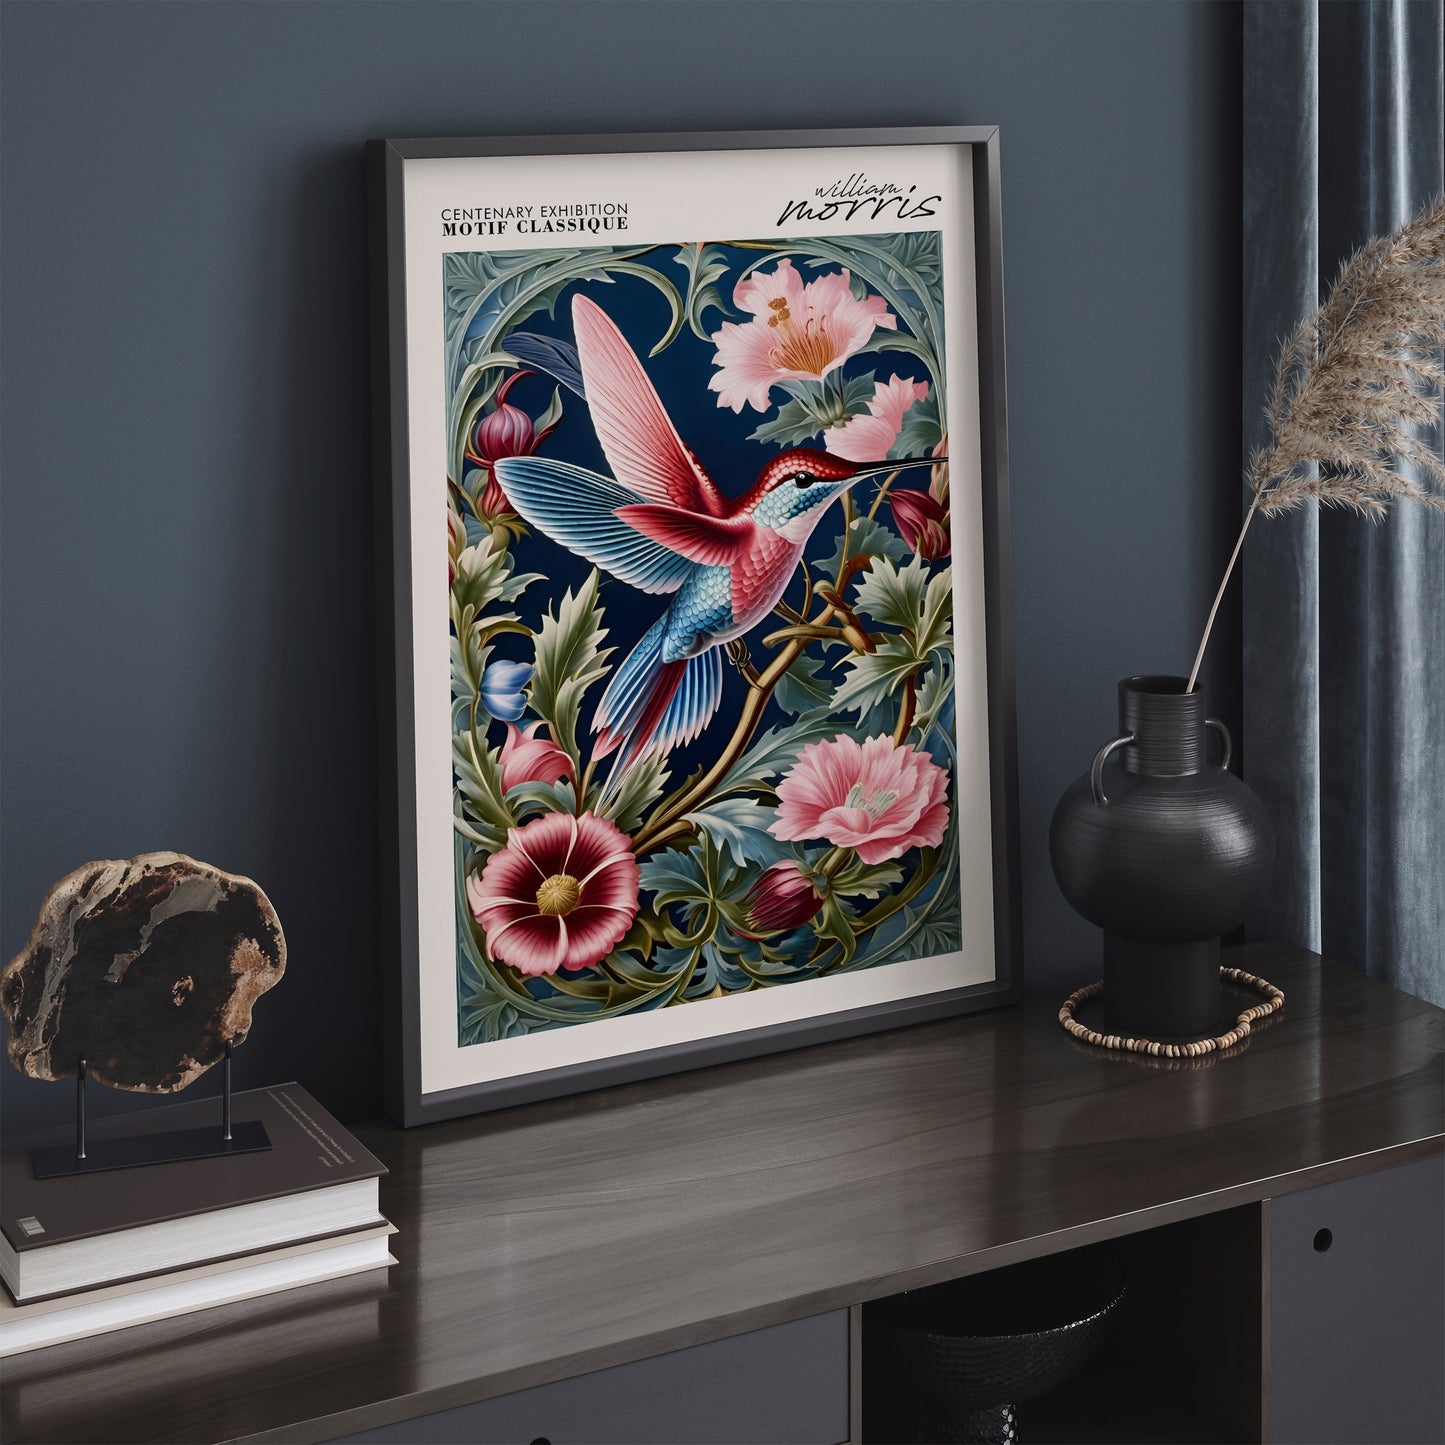 William Morris Hummingbird Poster